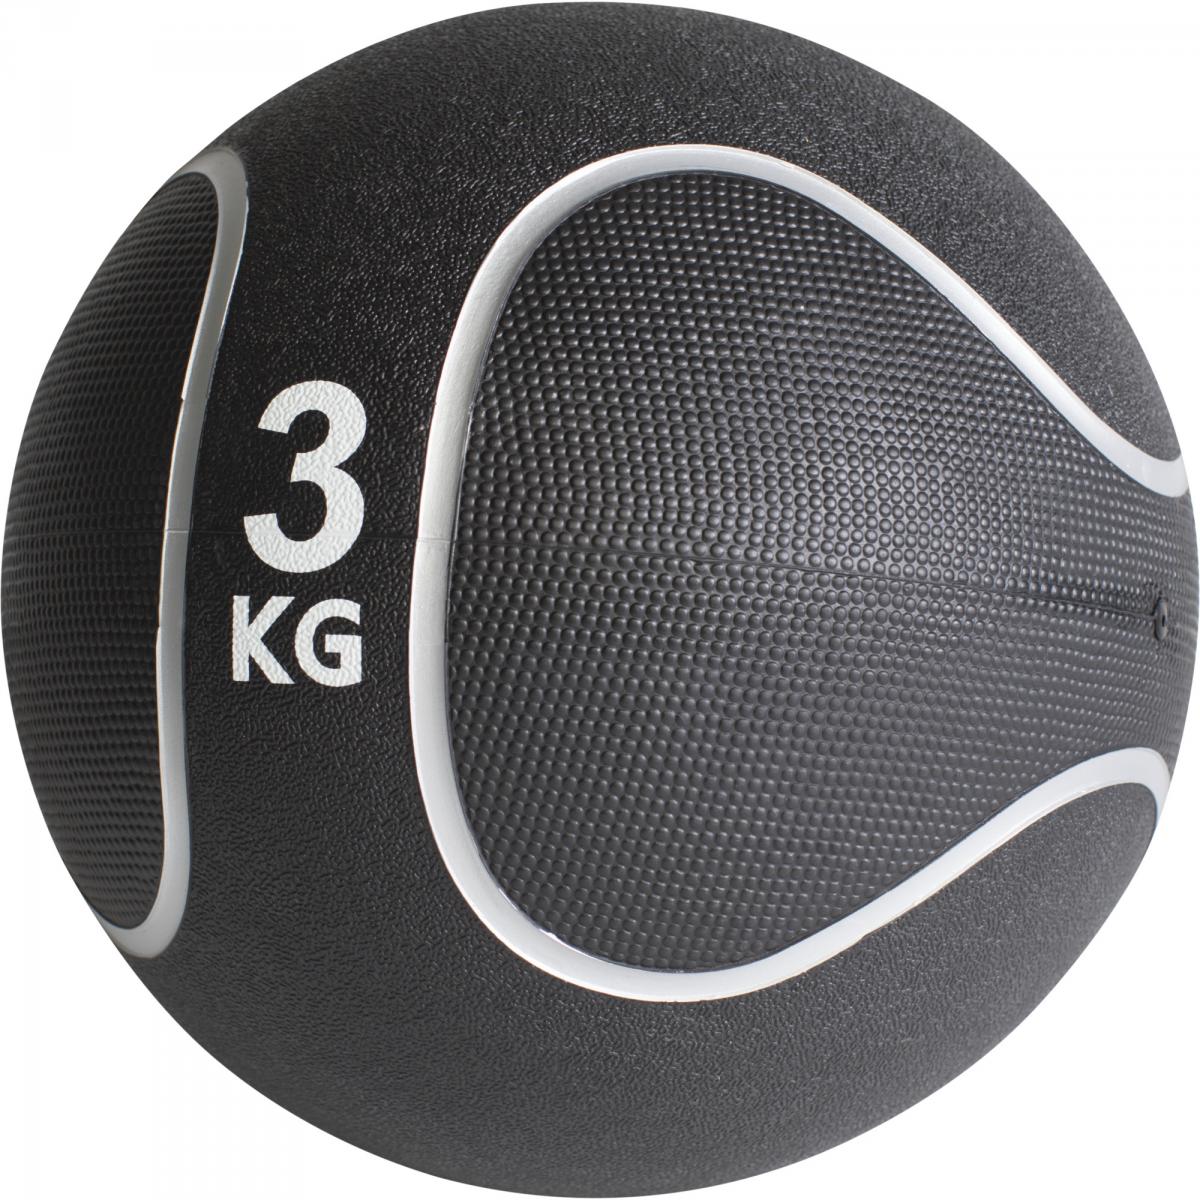 Médecine ball style noir/gris de 3 KG diamnètre 23cm